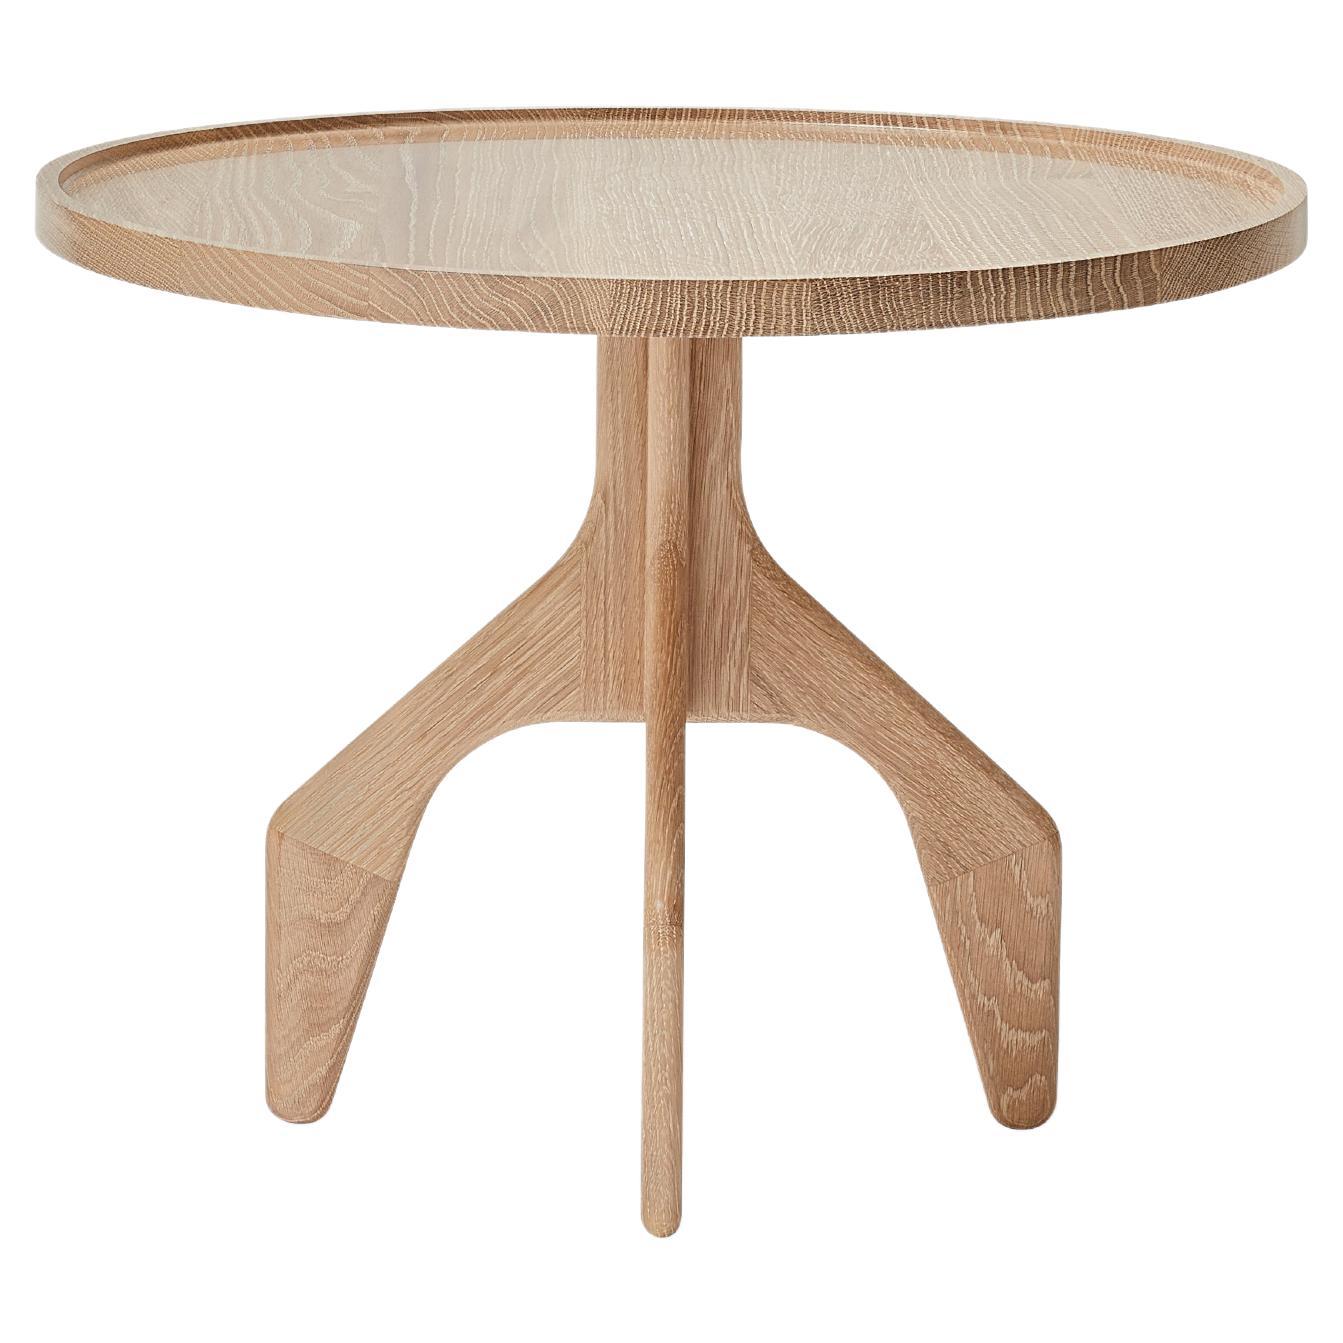 MG205 side table in oak by Malte Gormsen Designed by Space Copenhagen